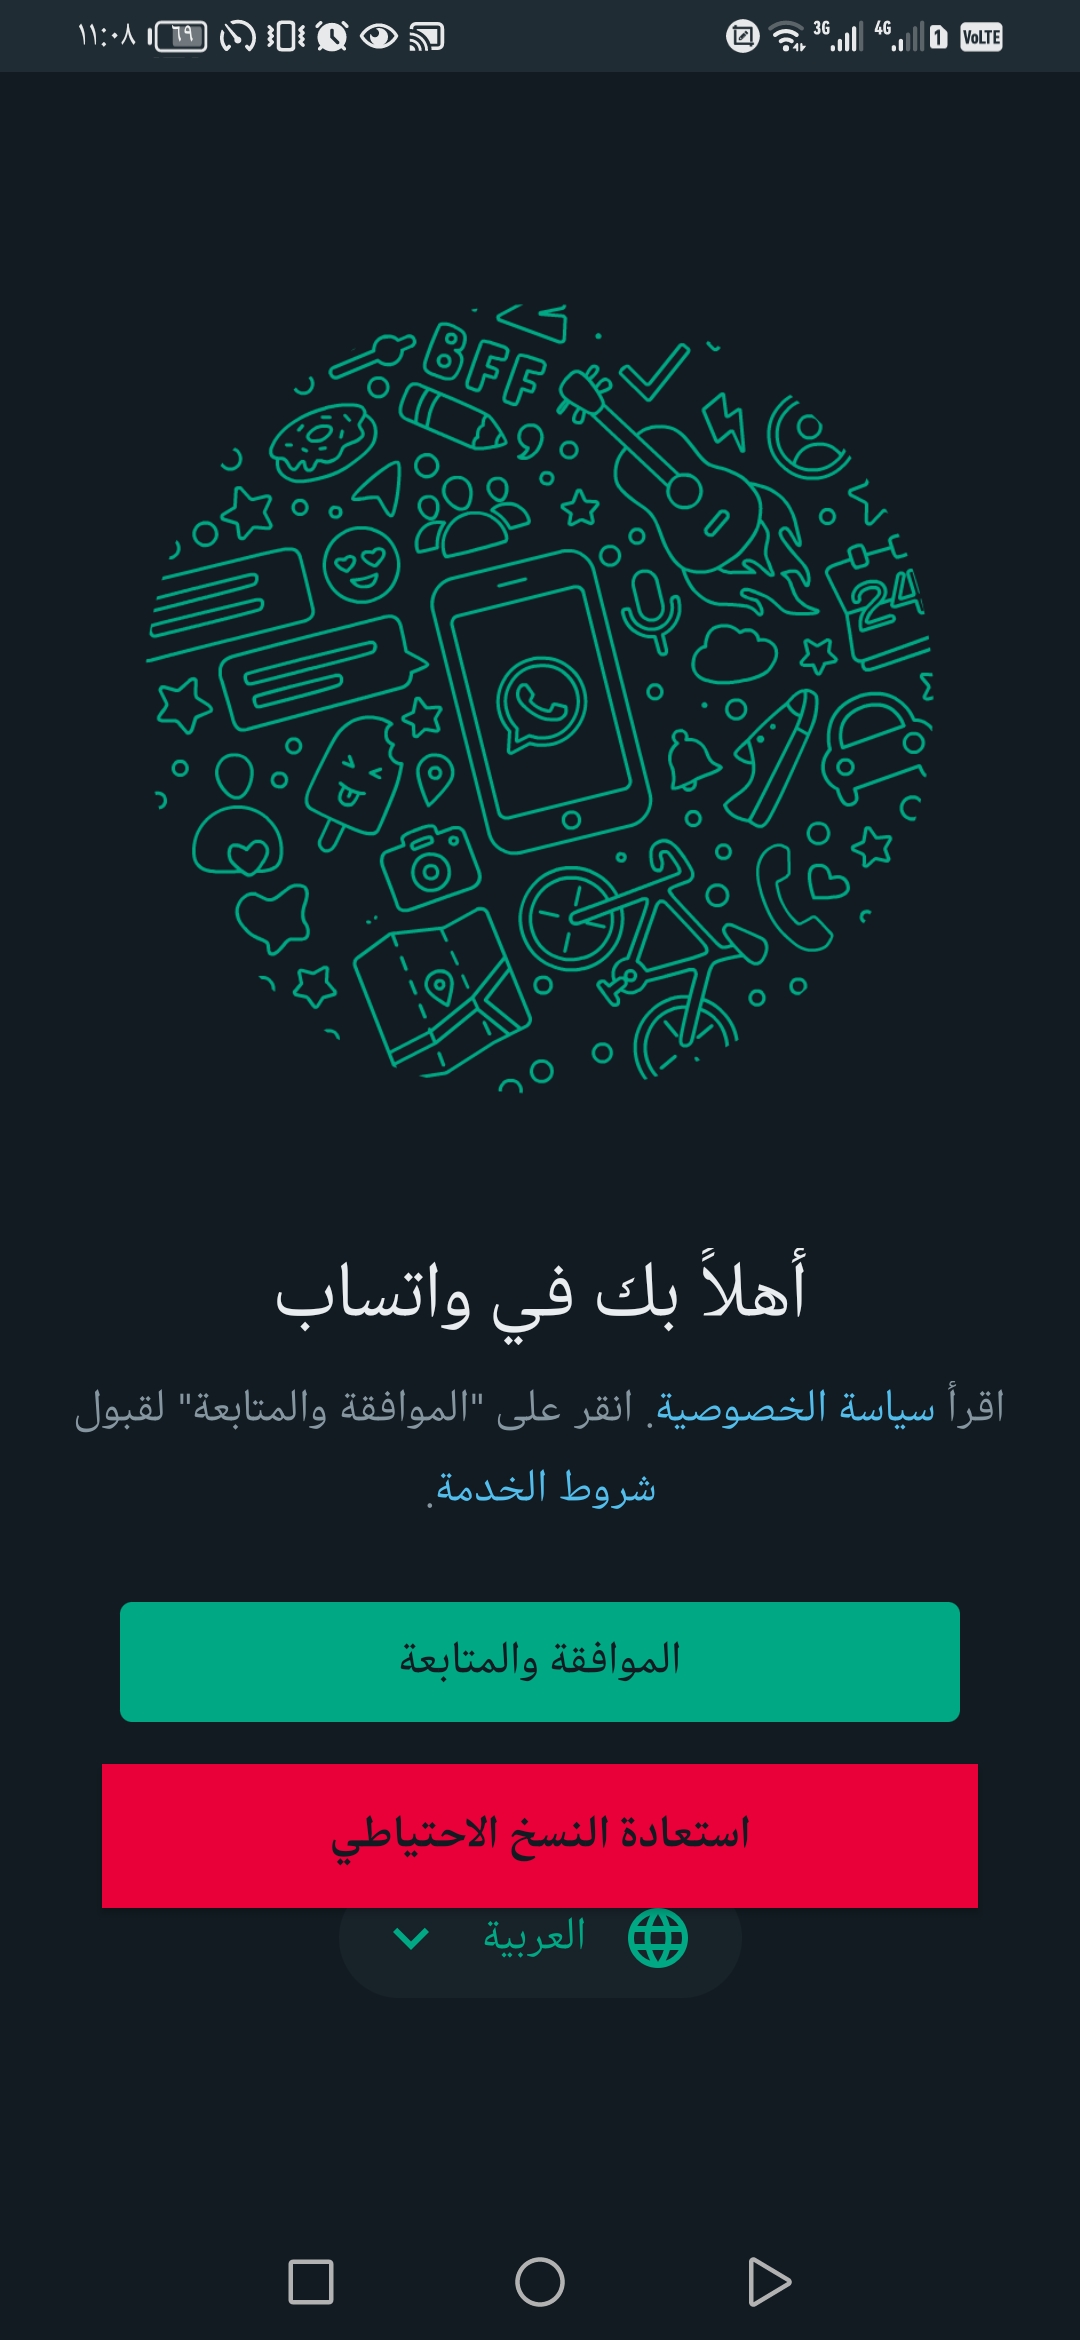 واجهة تطبيق واتساب ايرو الاسود